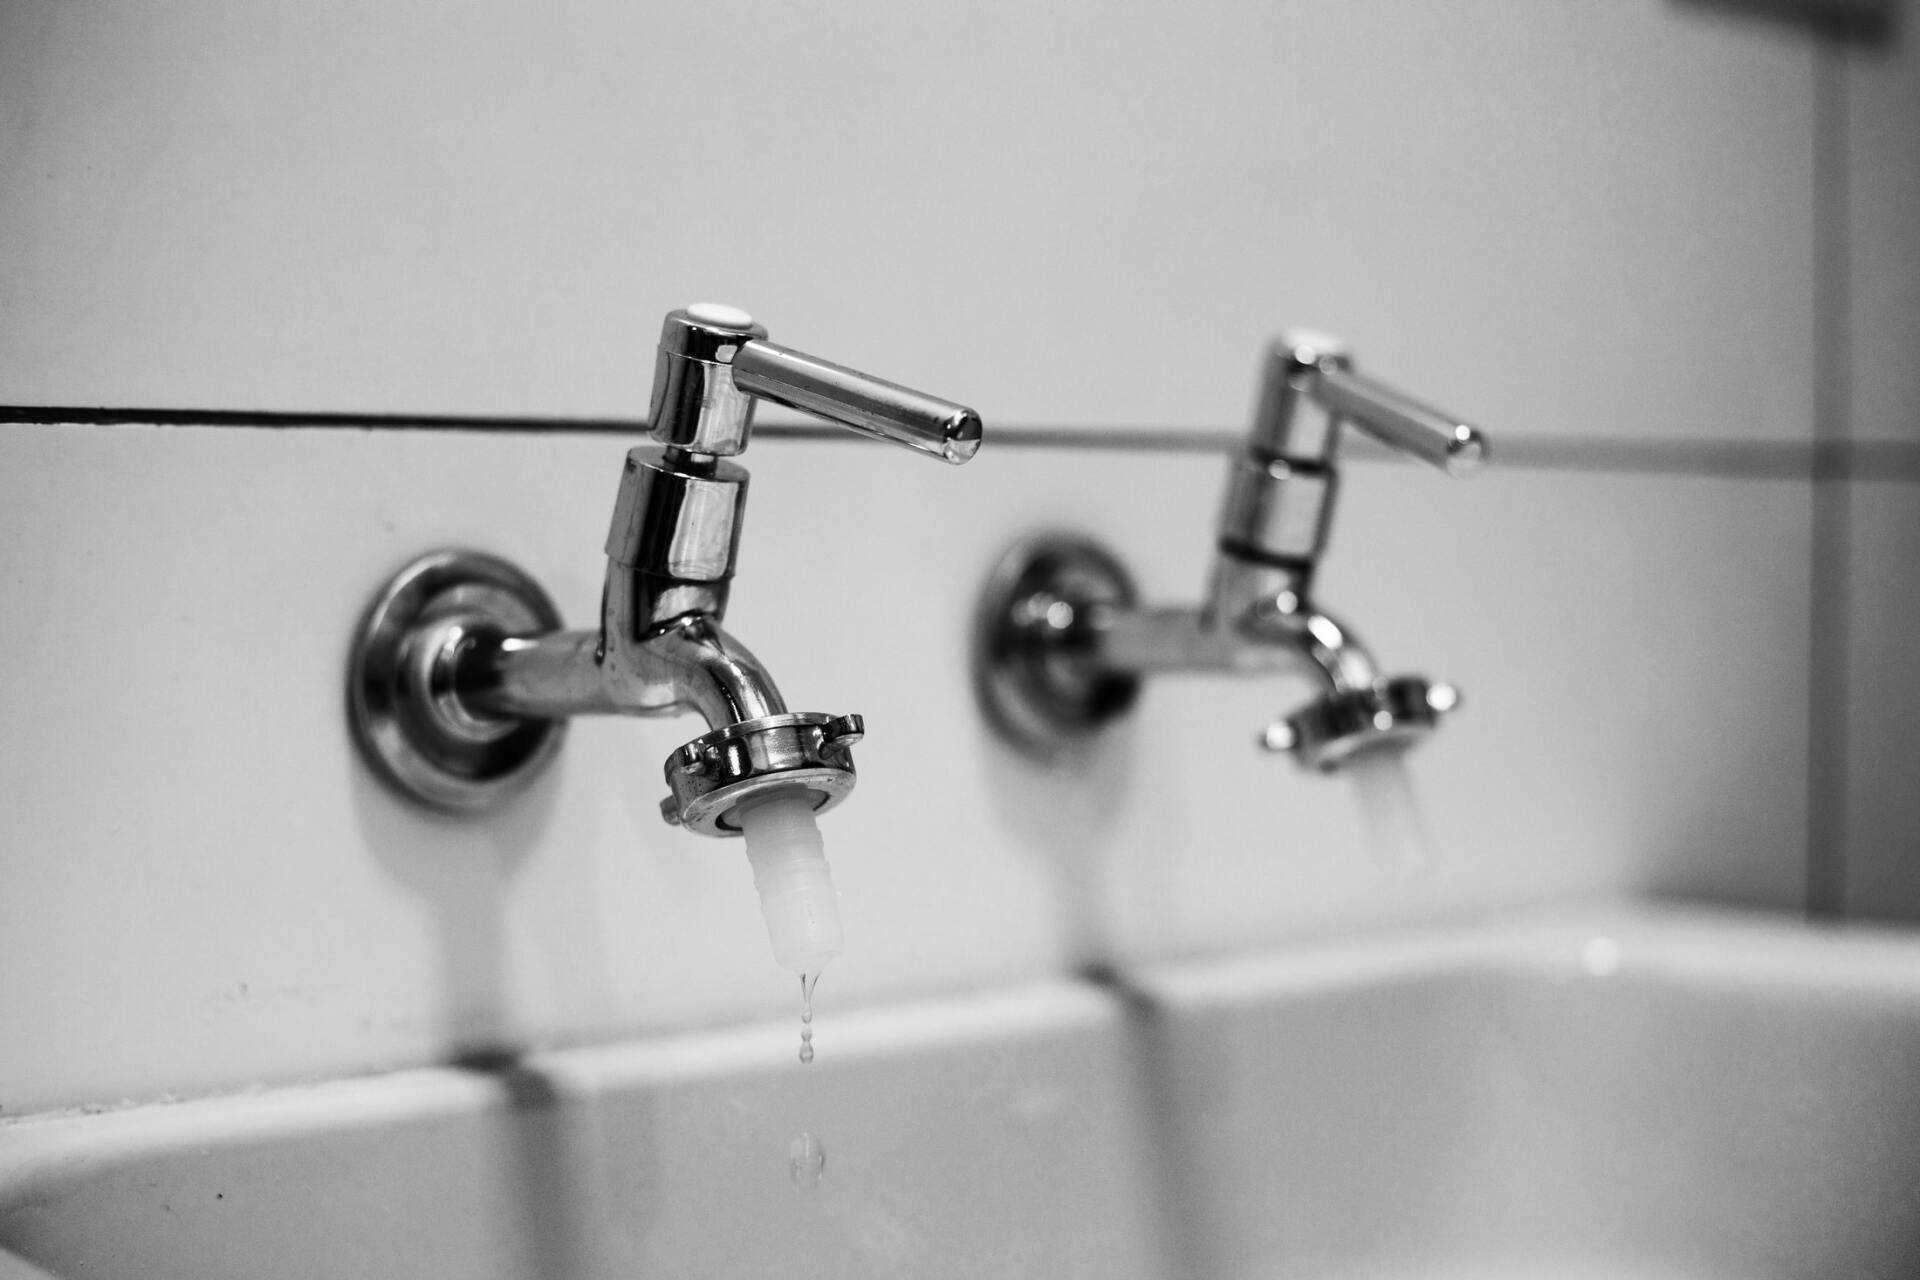 Plumbing taps